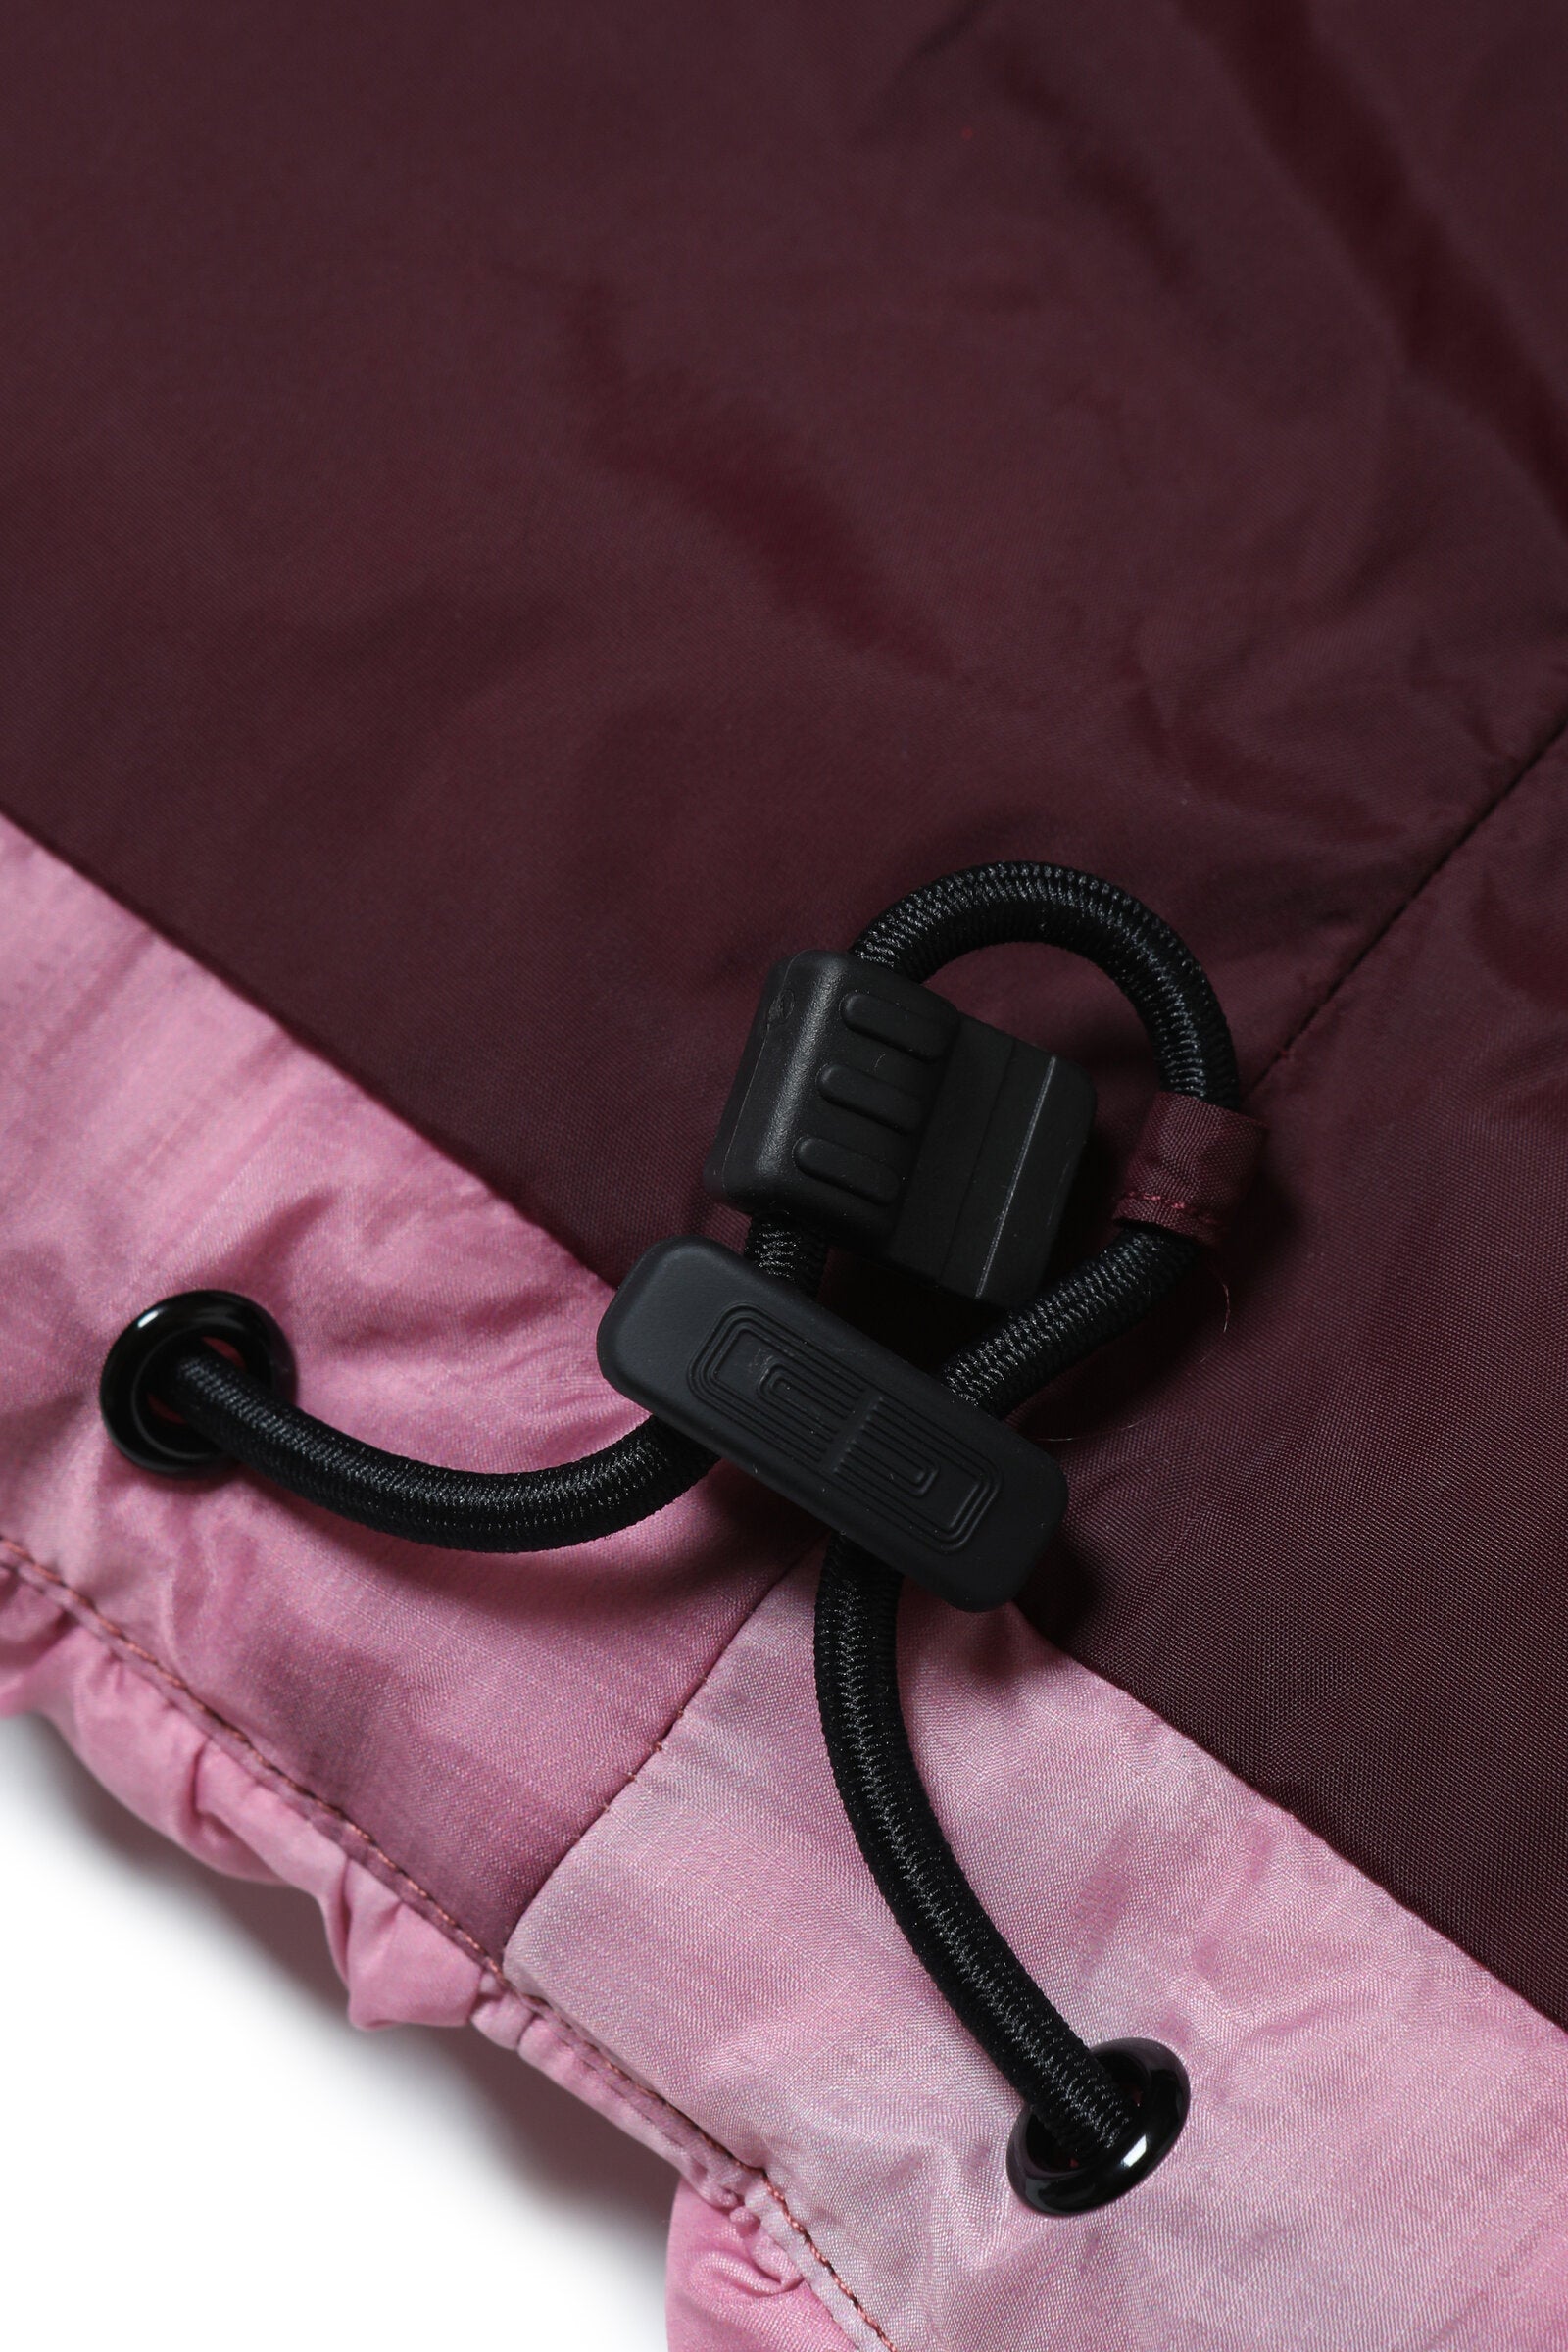 Sleeveless smock padded jacket with irregular dyeing effect